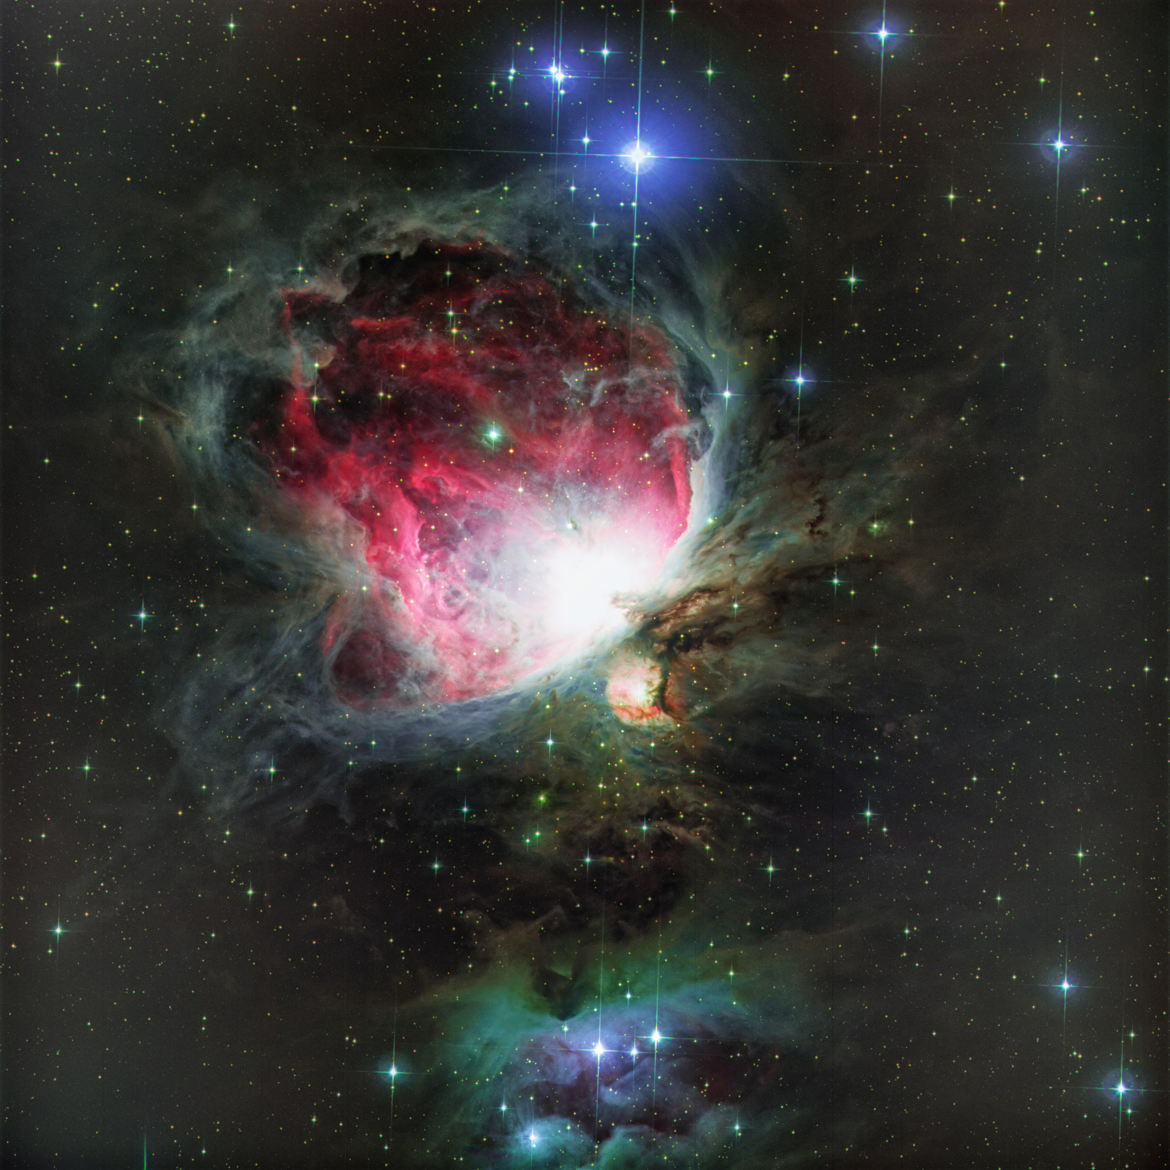 La nébuleuse d'Orion